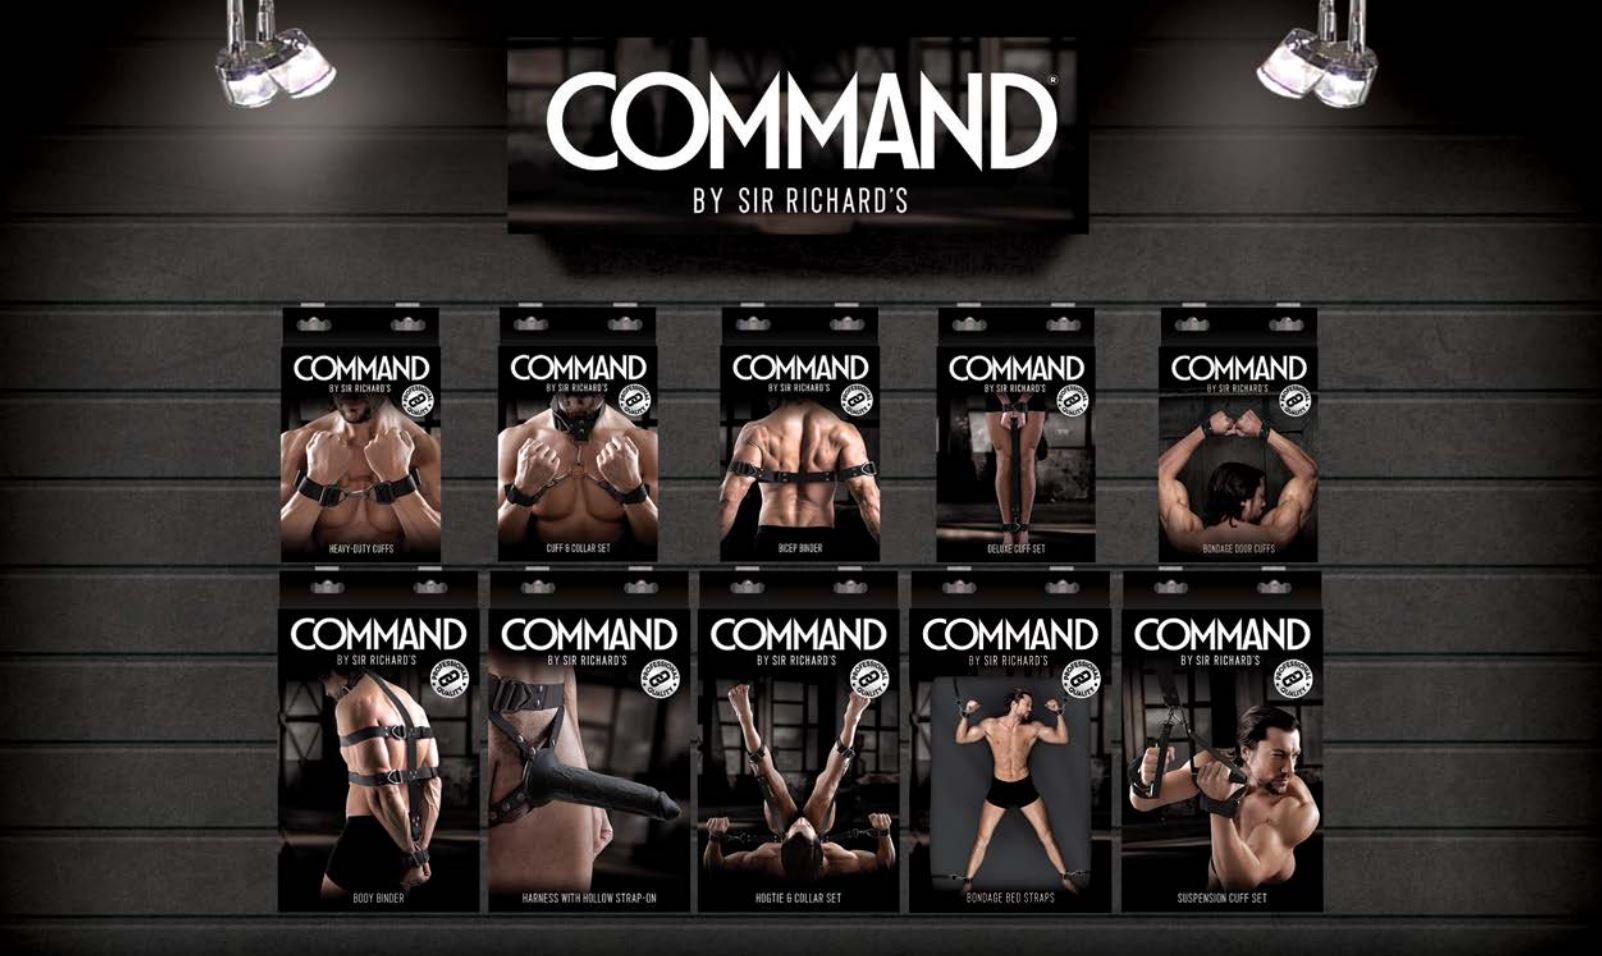 Buy COMMAND premium Bondage gear online in Australia